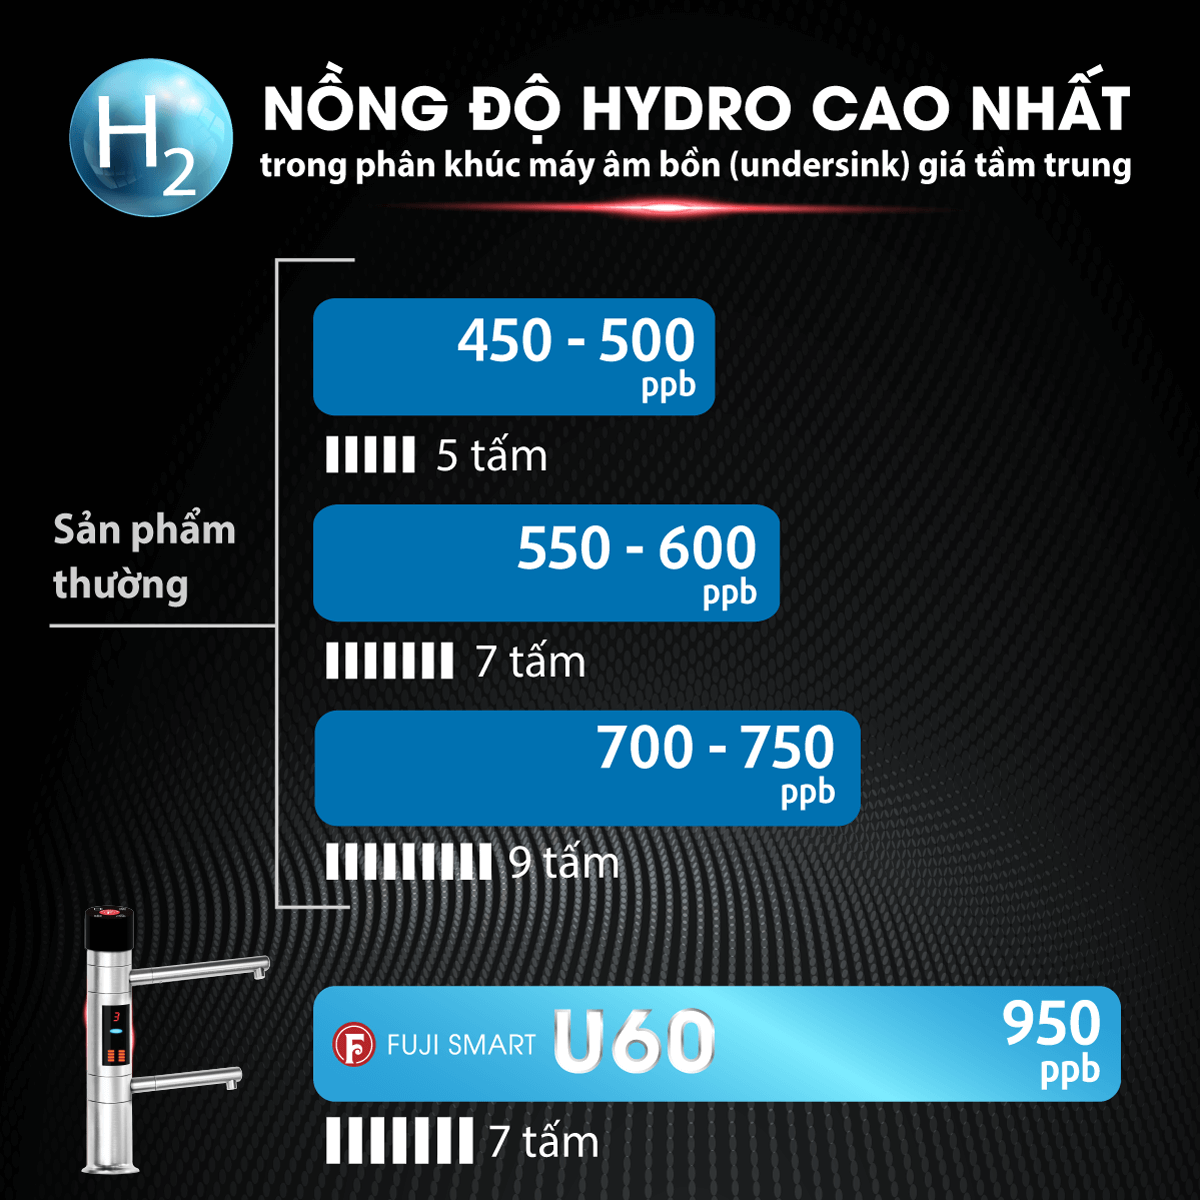 Máy lọc nước ion kiềm Fuji Smart U60 có hàm lượng hydrogen vượt trội đến ~ 950 ppb